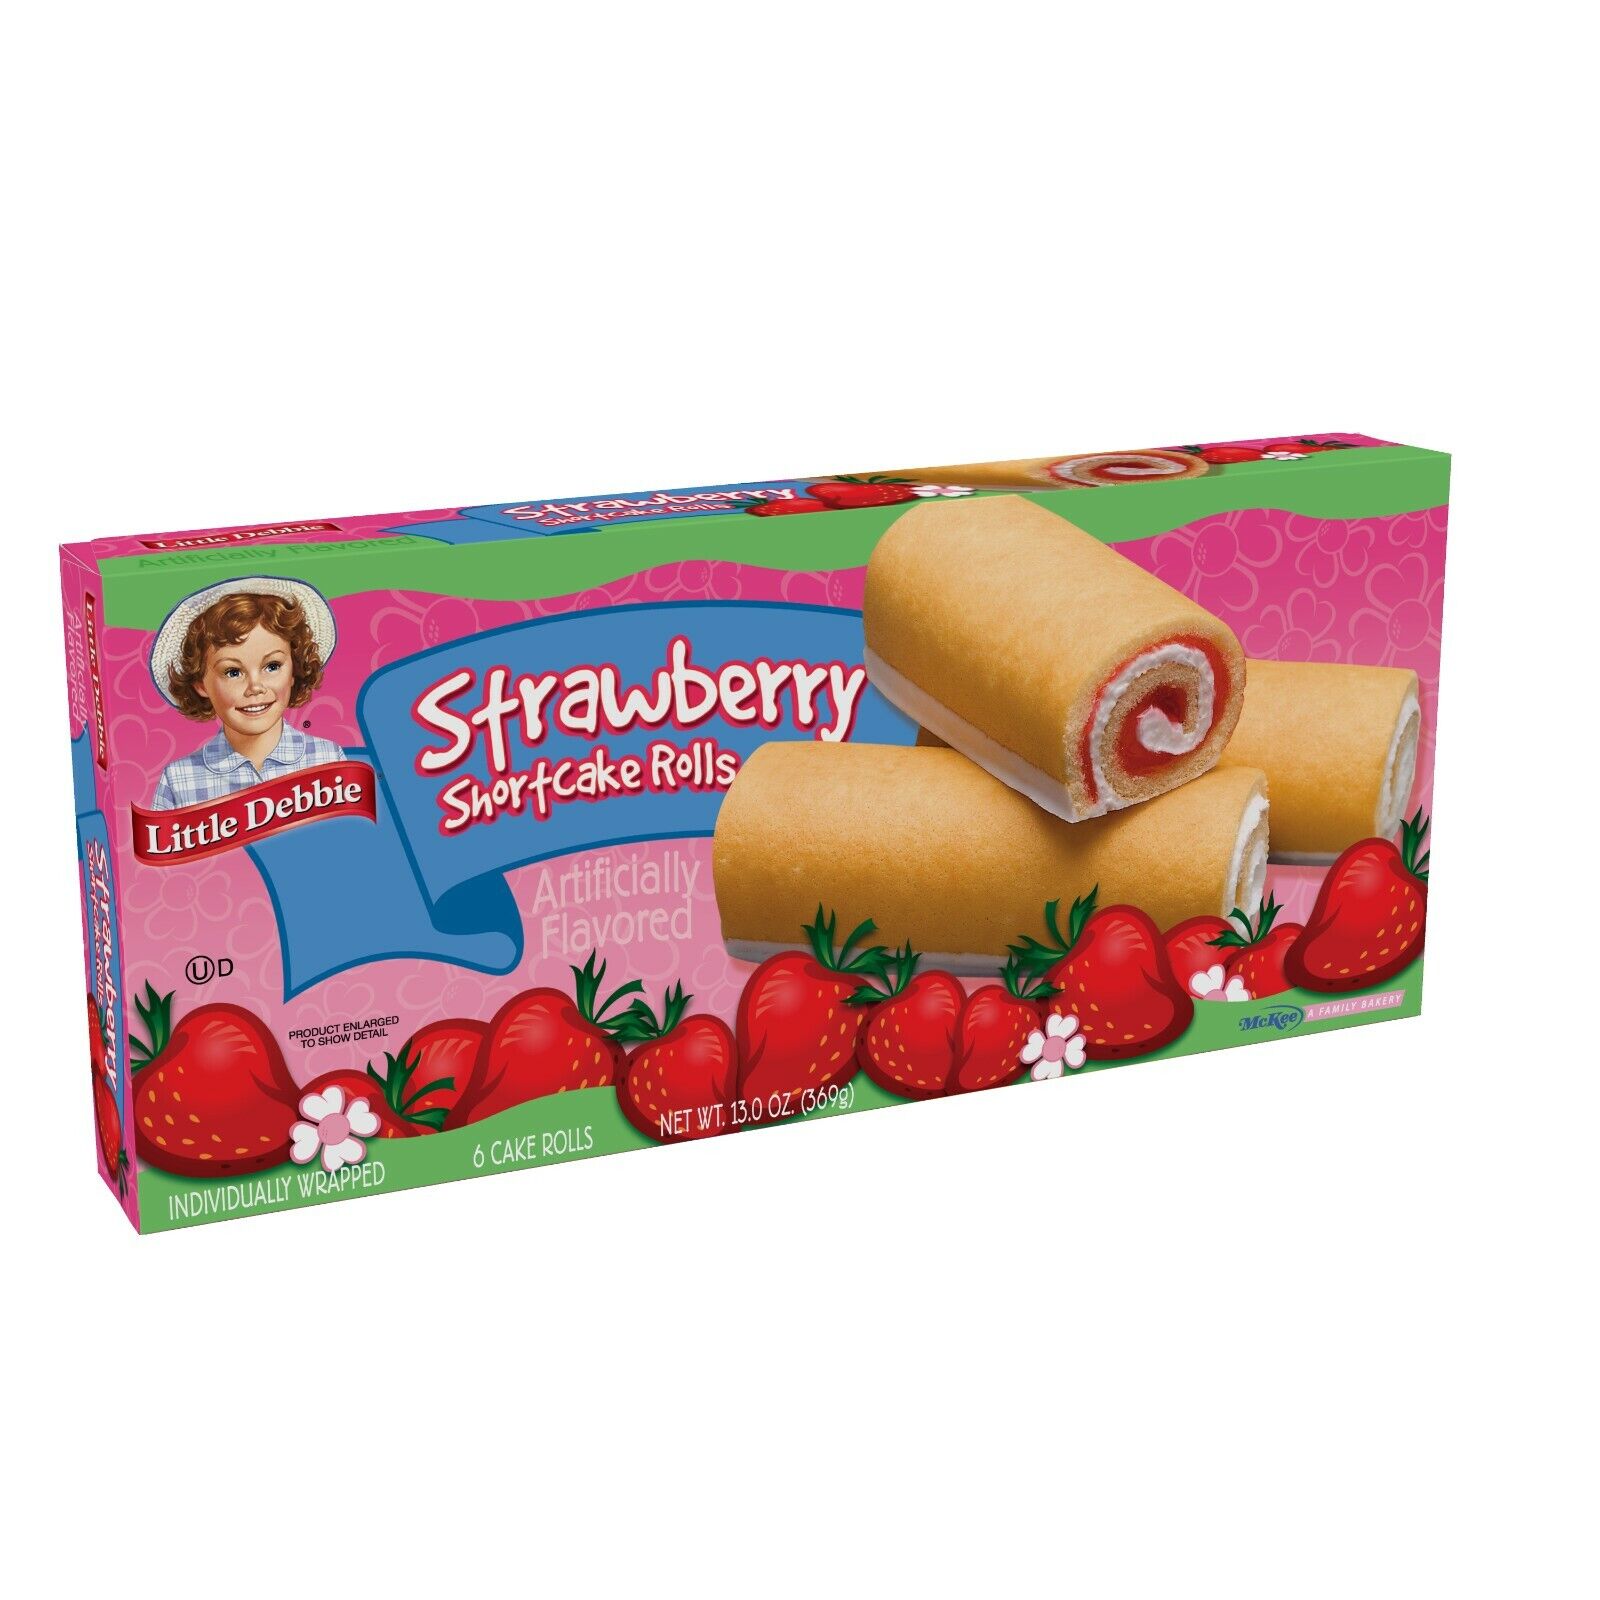 Little Debbie Strawberry Shortcake Rolls, Lot of 3, Free Shipping Litle Debbie